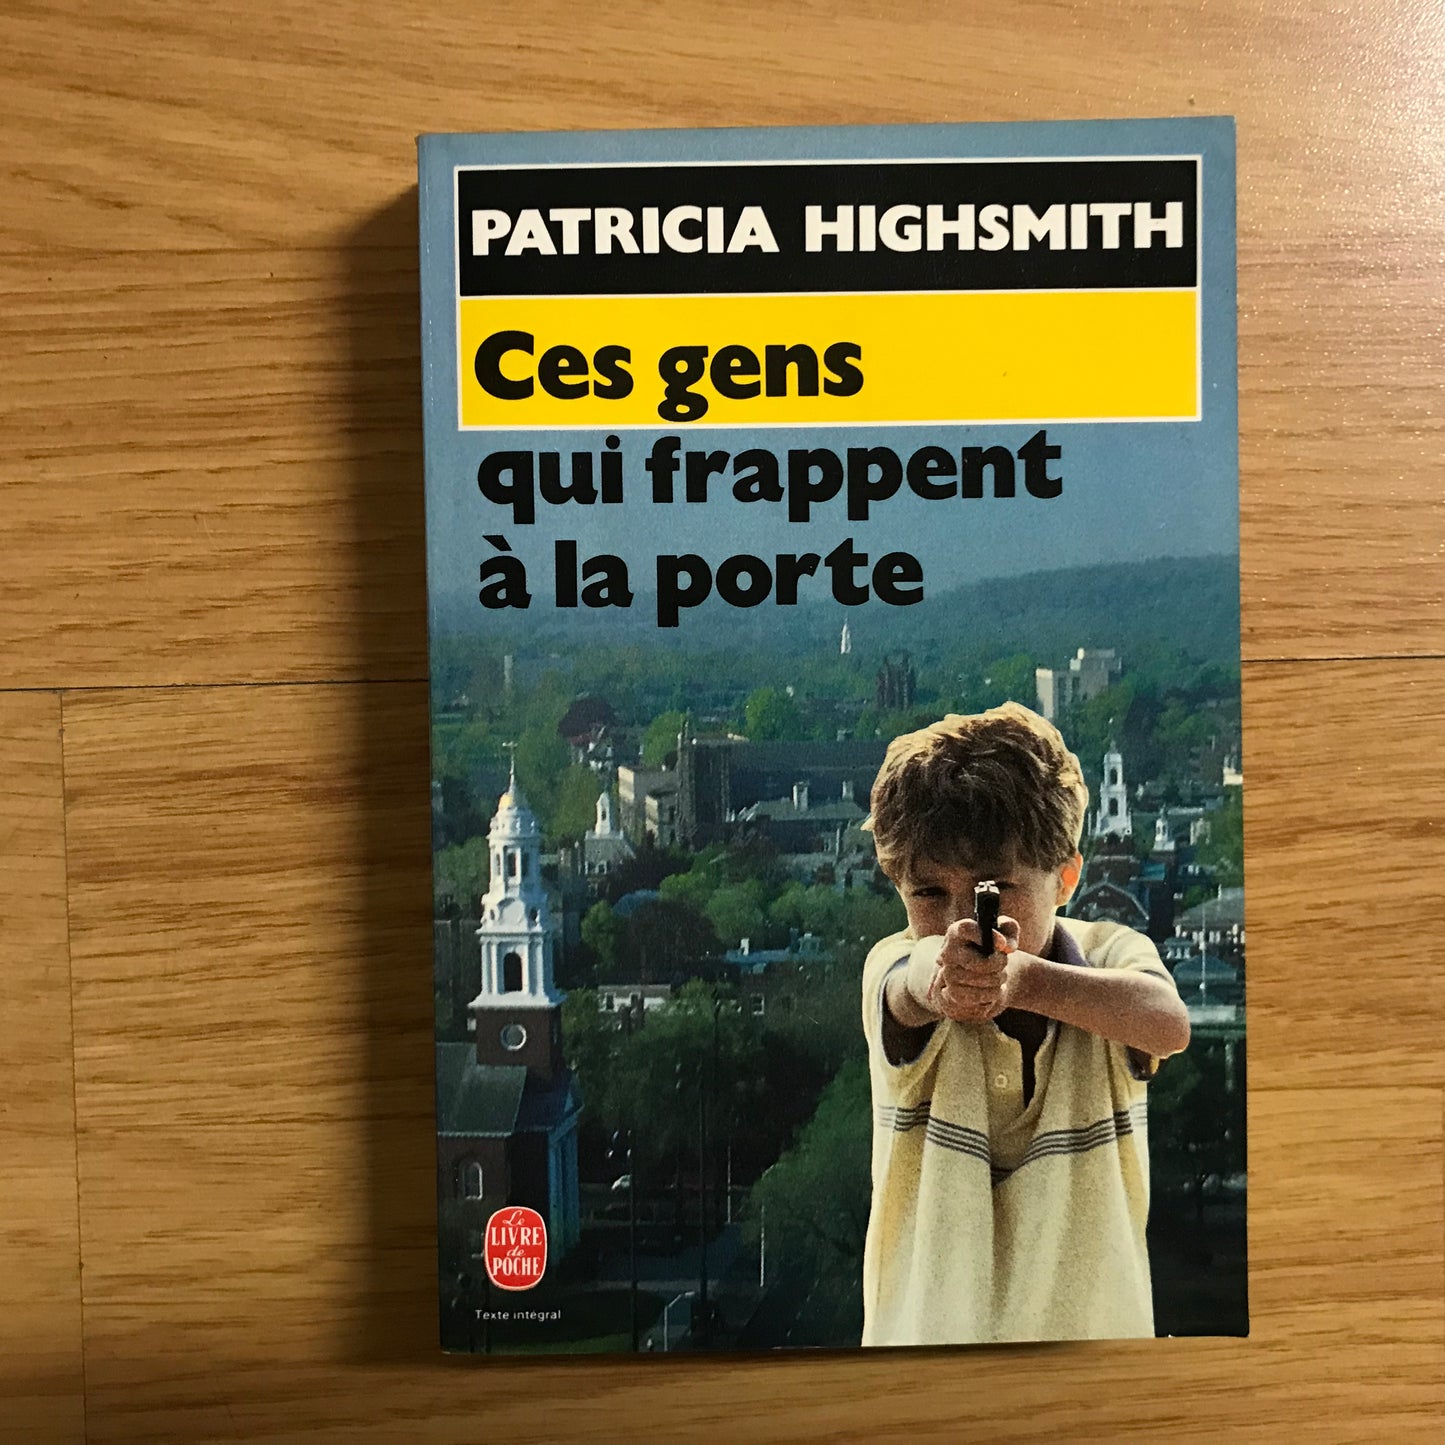 Highsmith, Patricia - Ces gens qui frappent à la porte